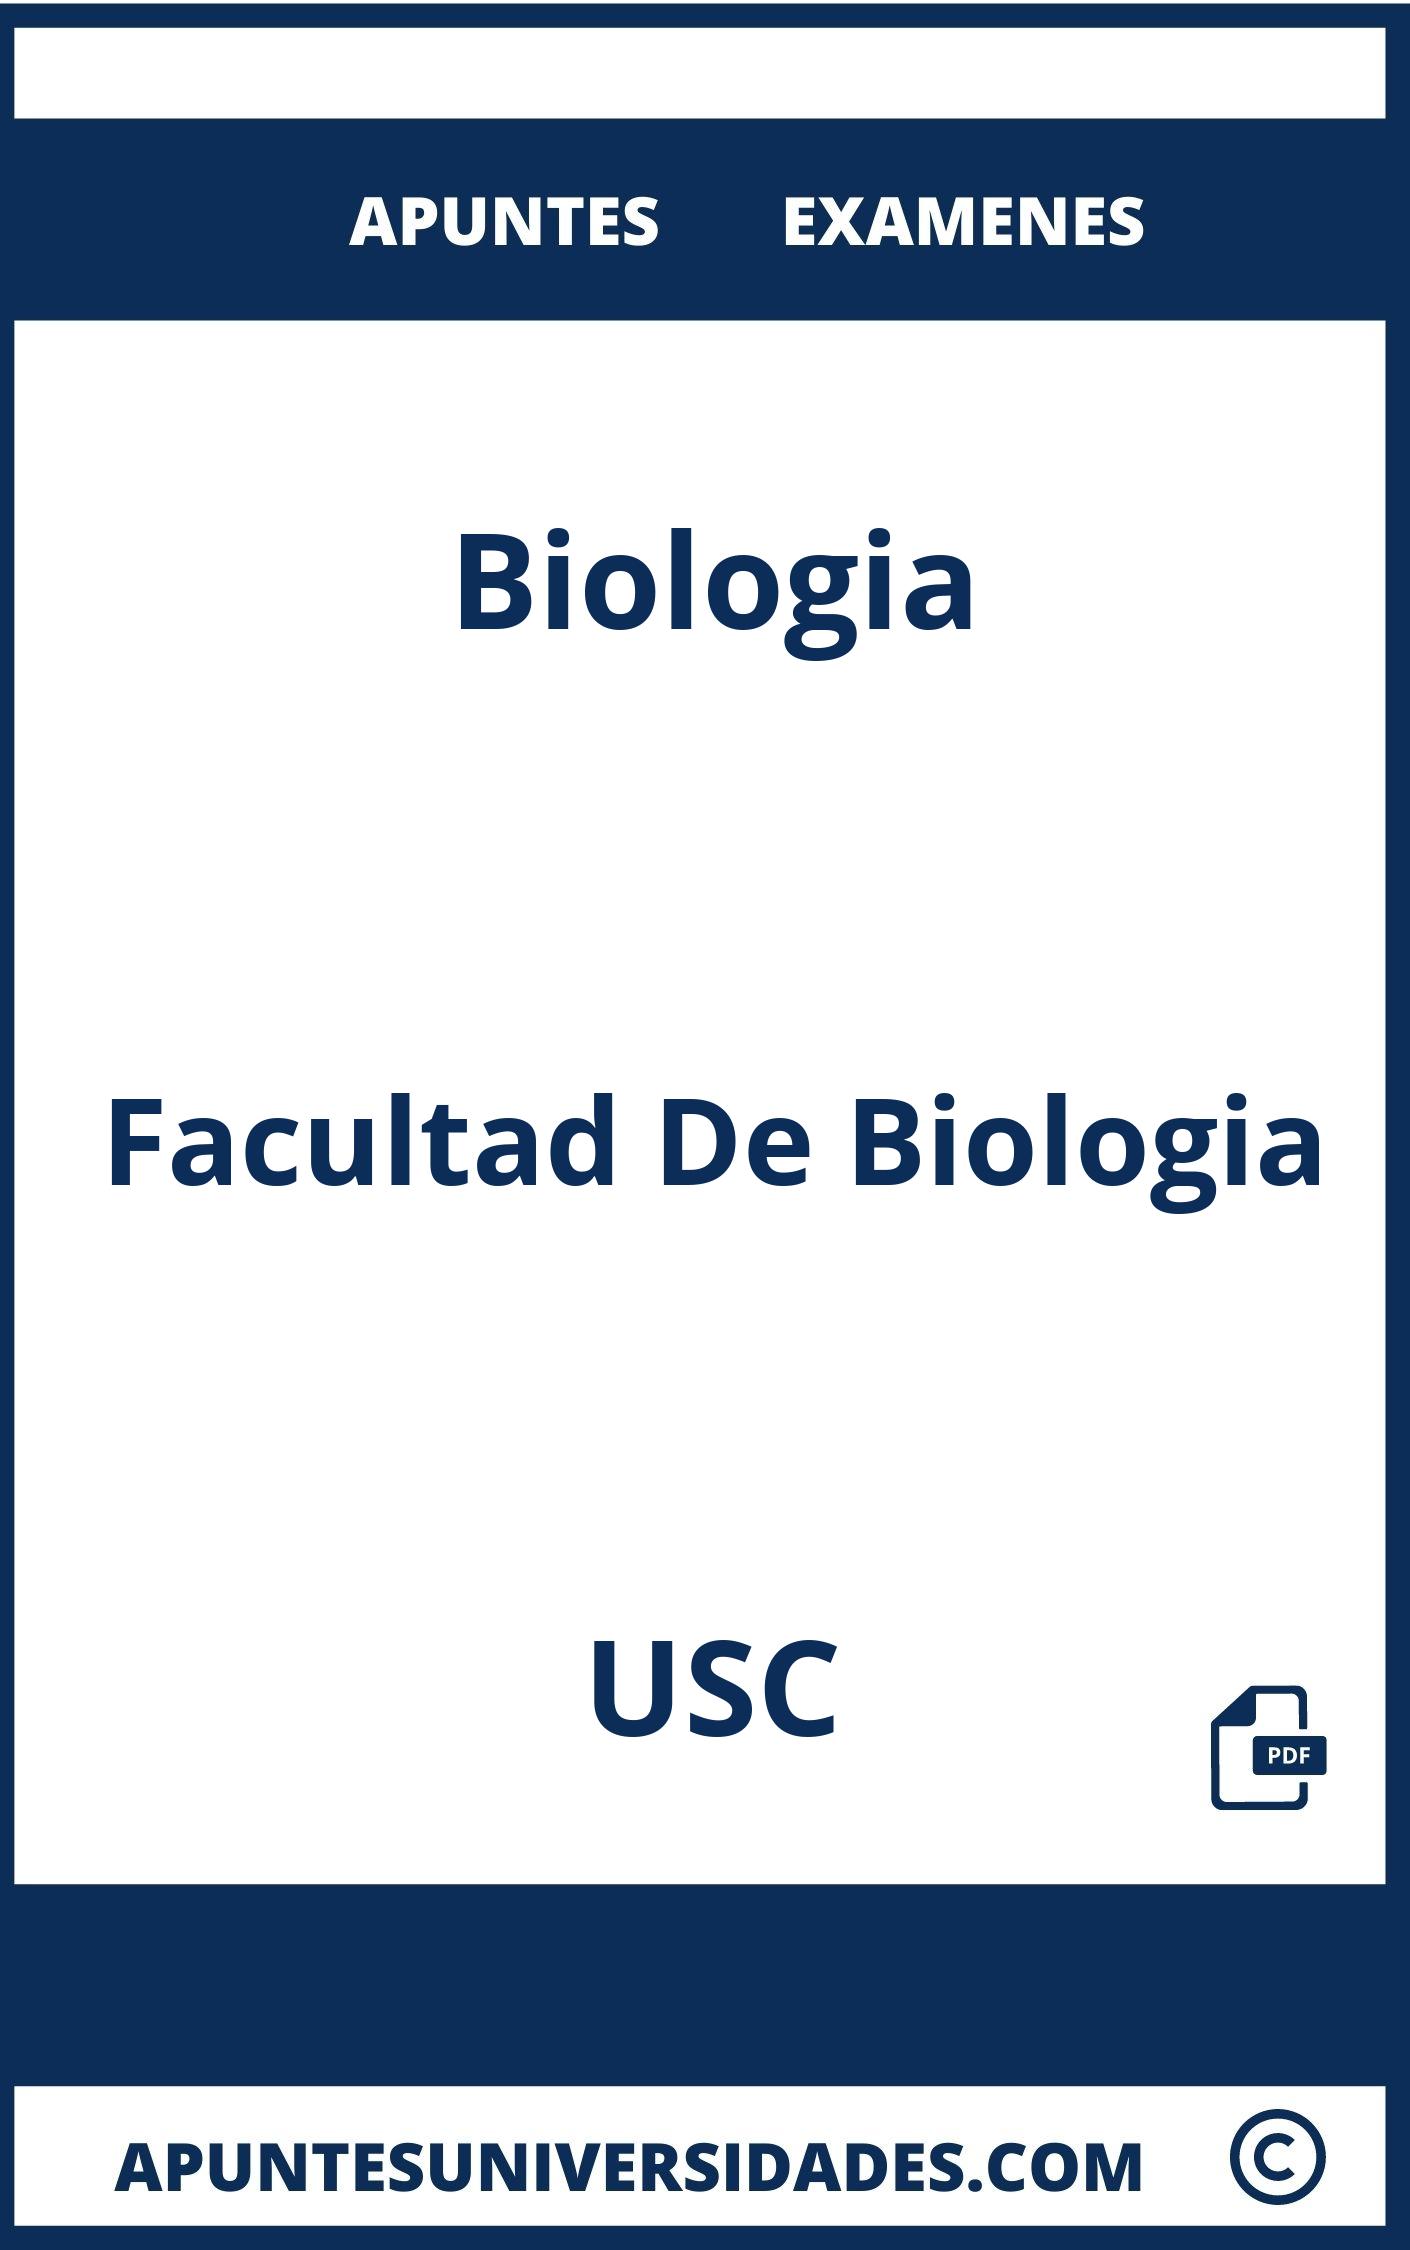 Apuntes y Examenes de Biologia USC